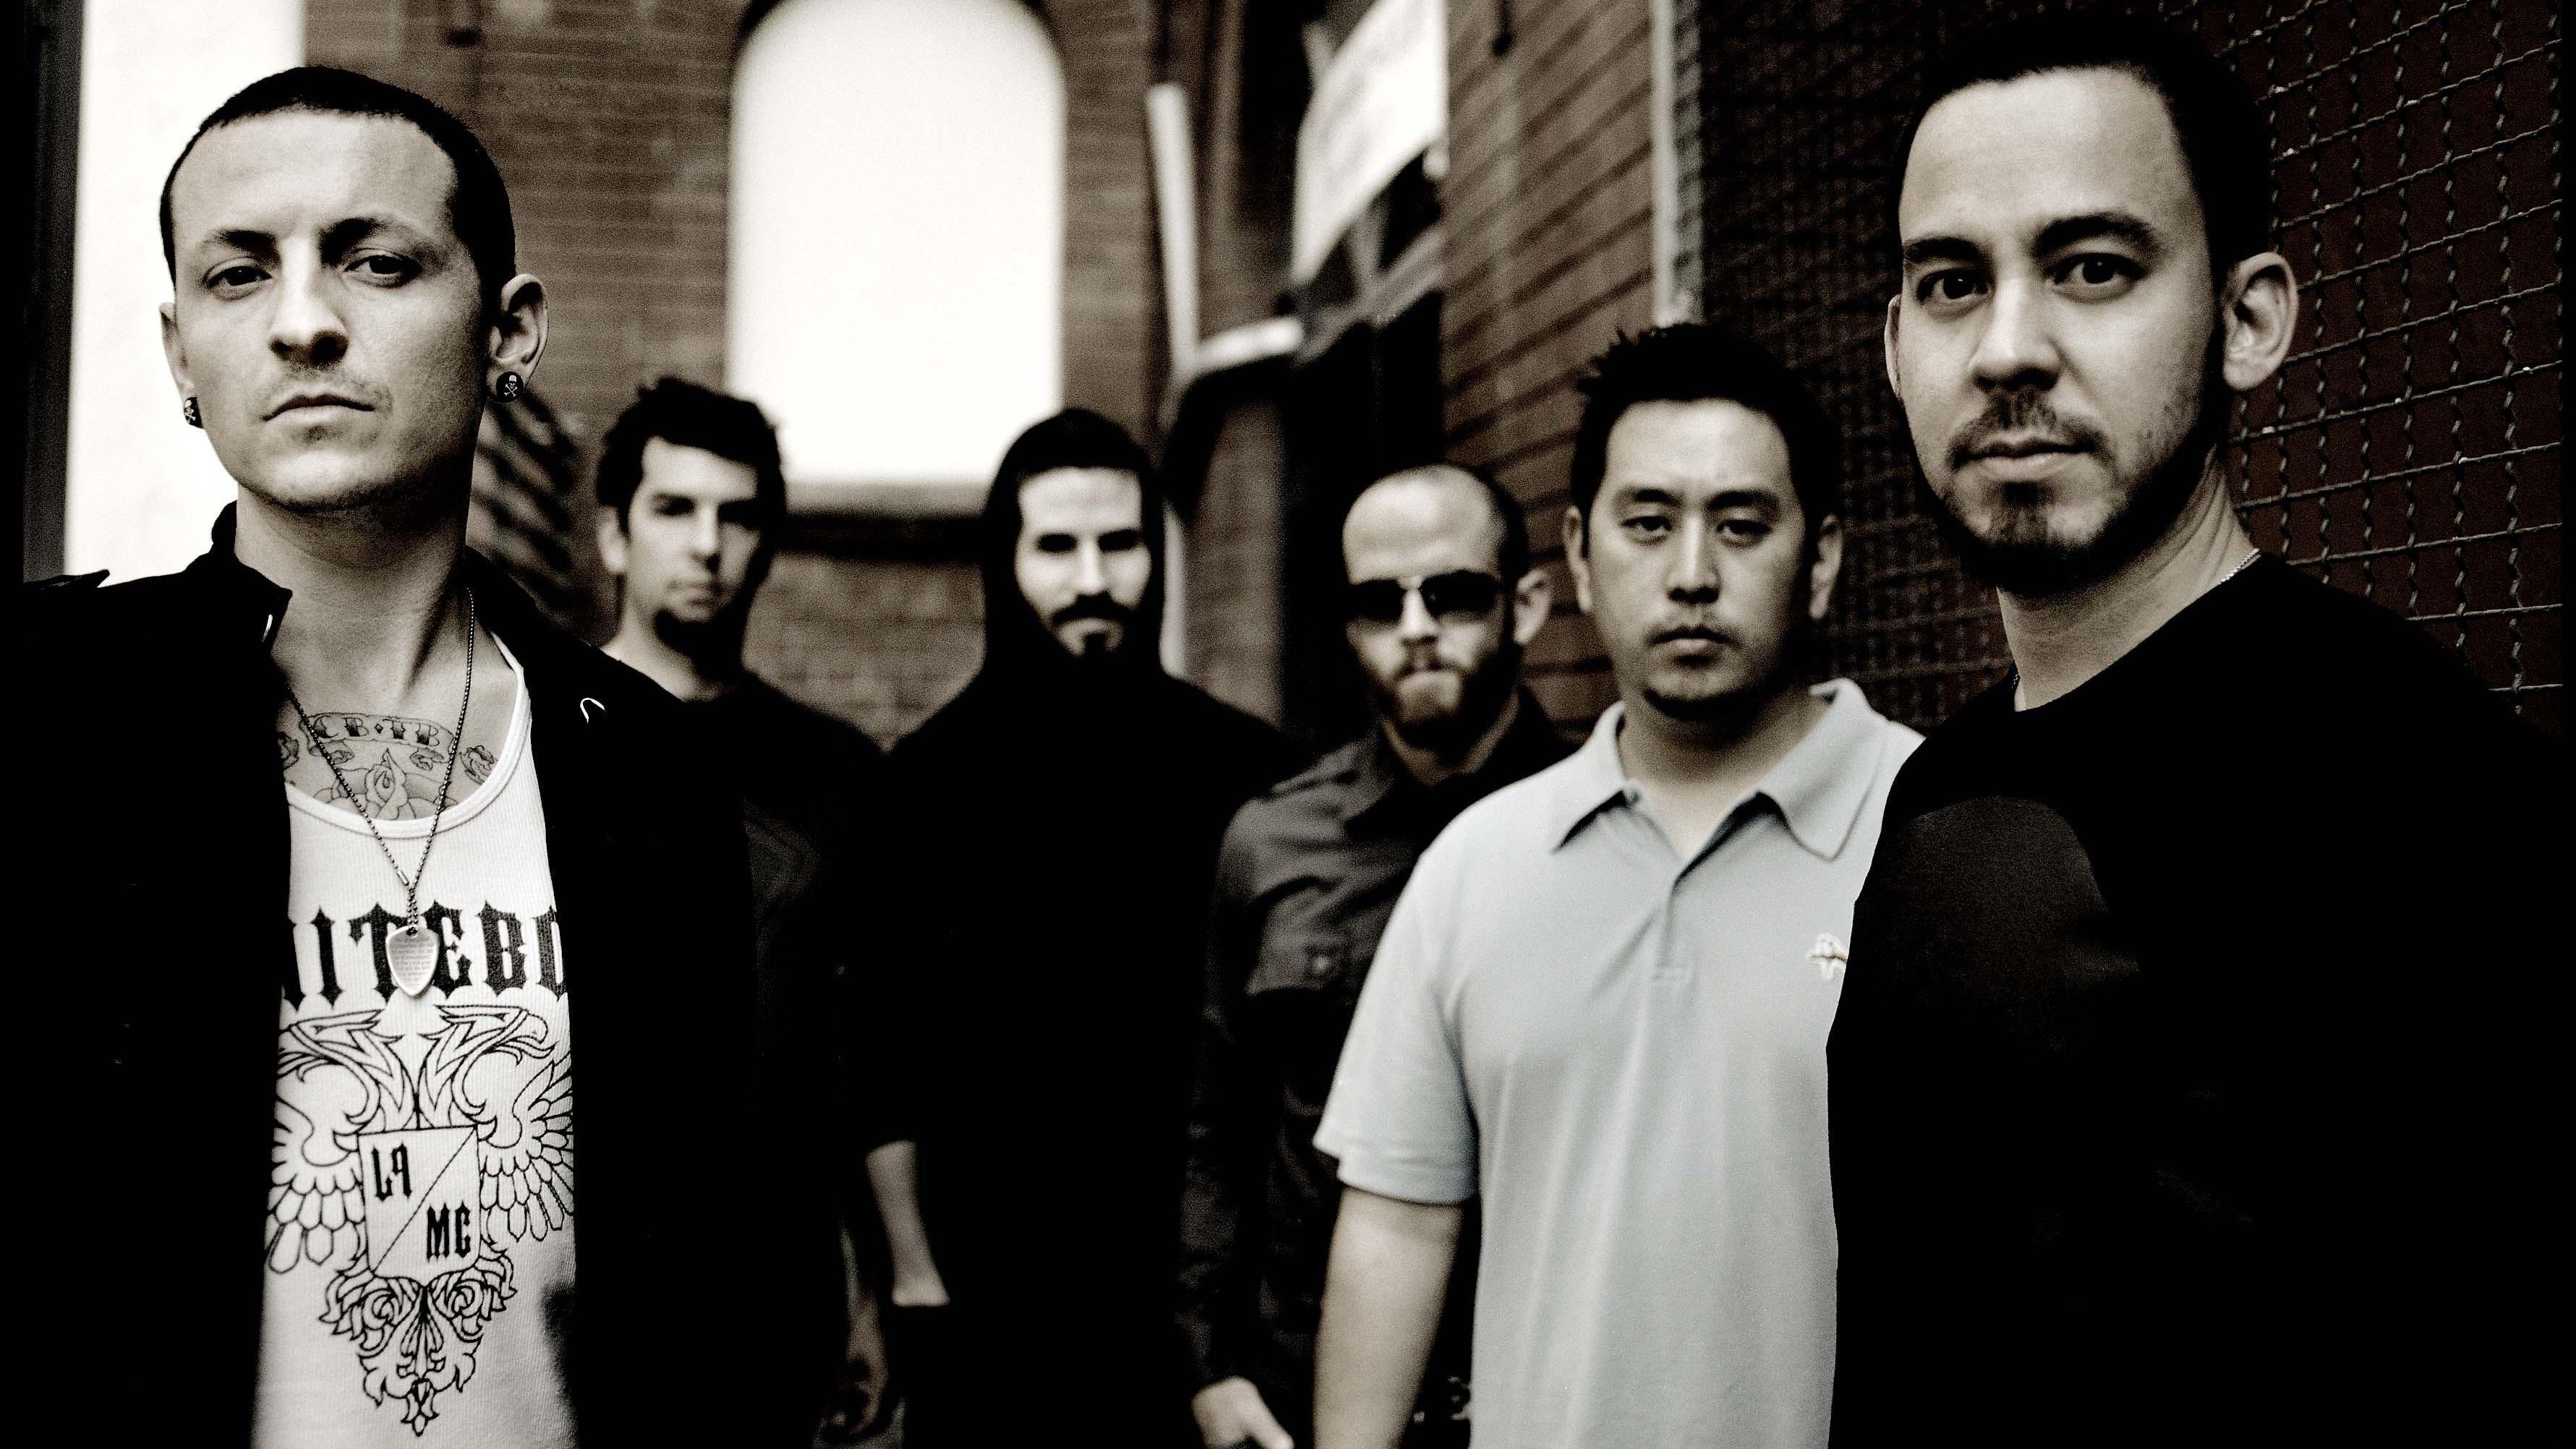 Linkin Park publica versión vocal del tema “One More Light” con Chester Bennington. Cusica Plus.